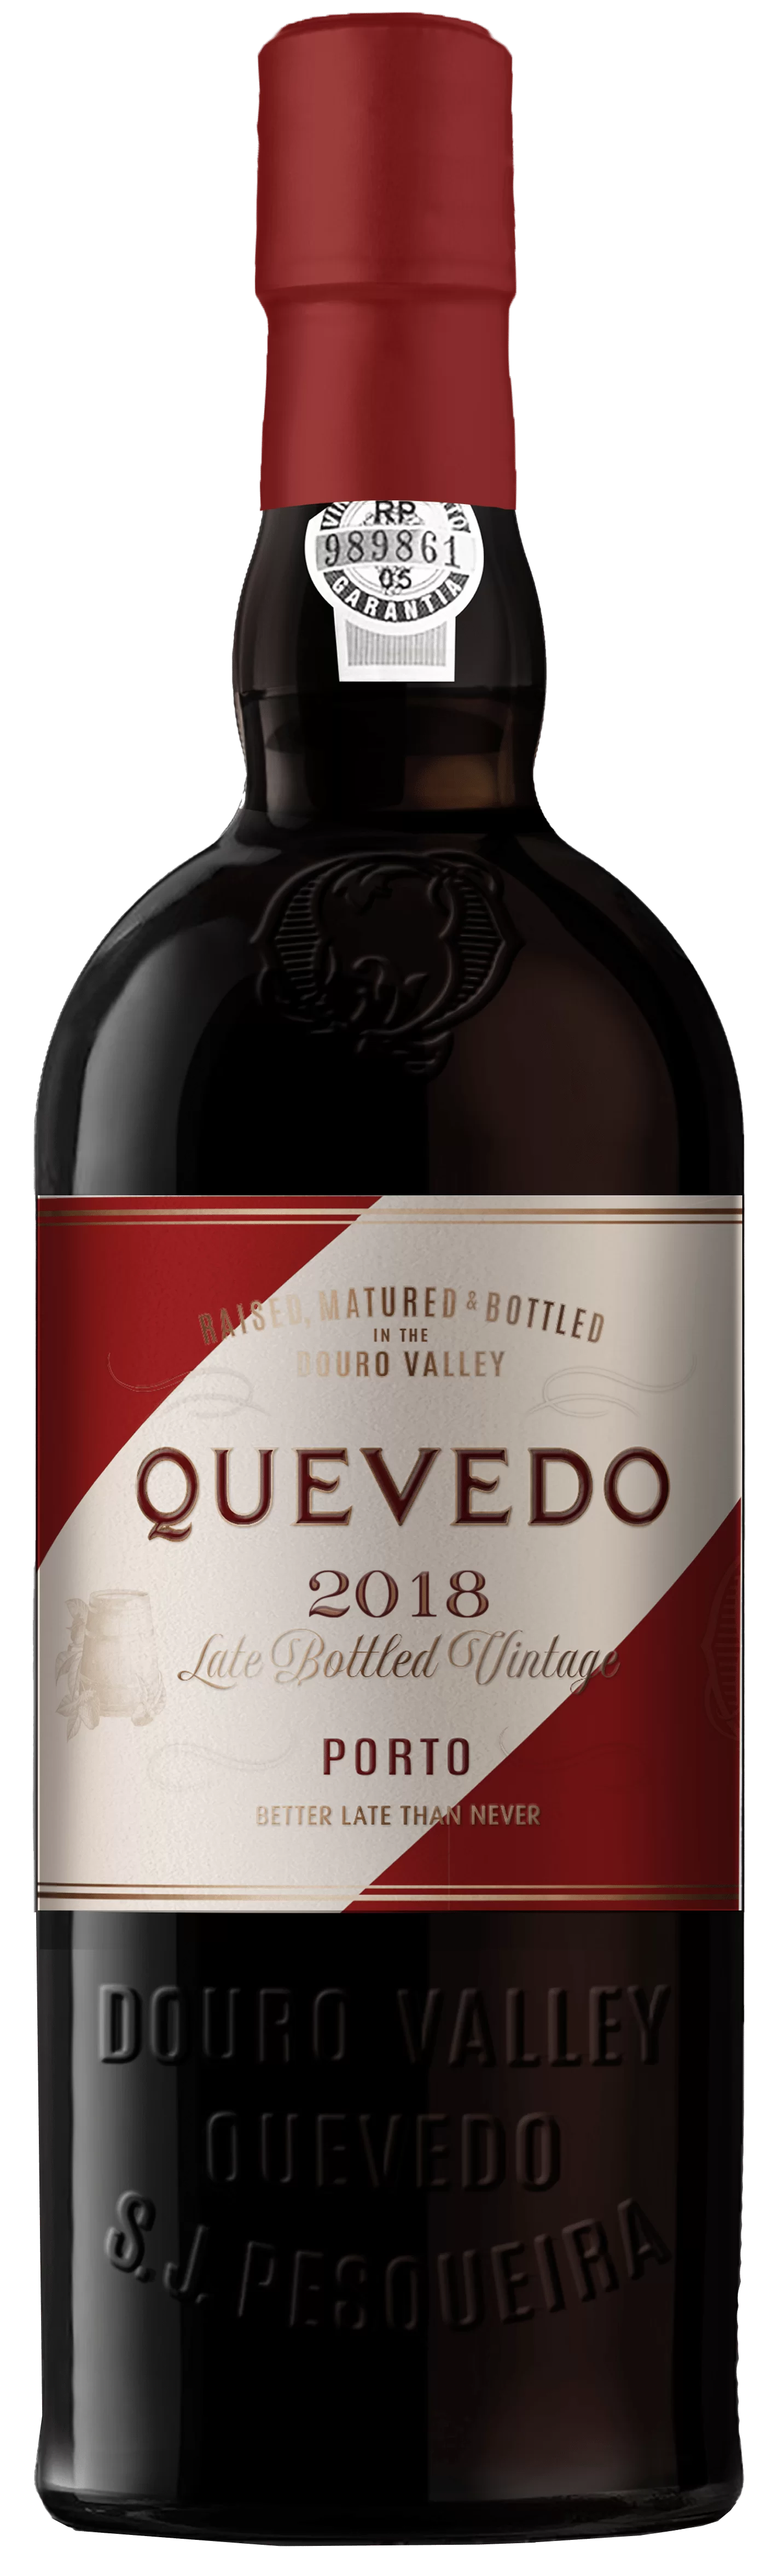 Quevedo Late Bottled Vintage (LBV) Port 2018 0,75l Flasche